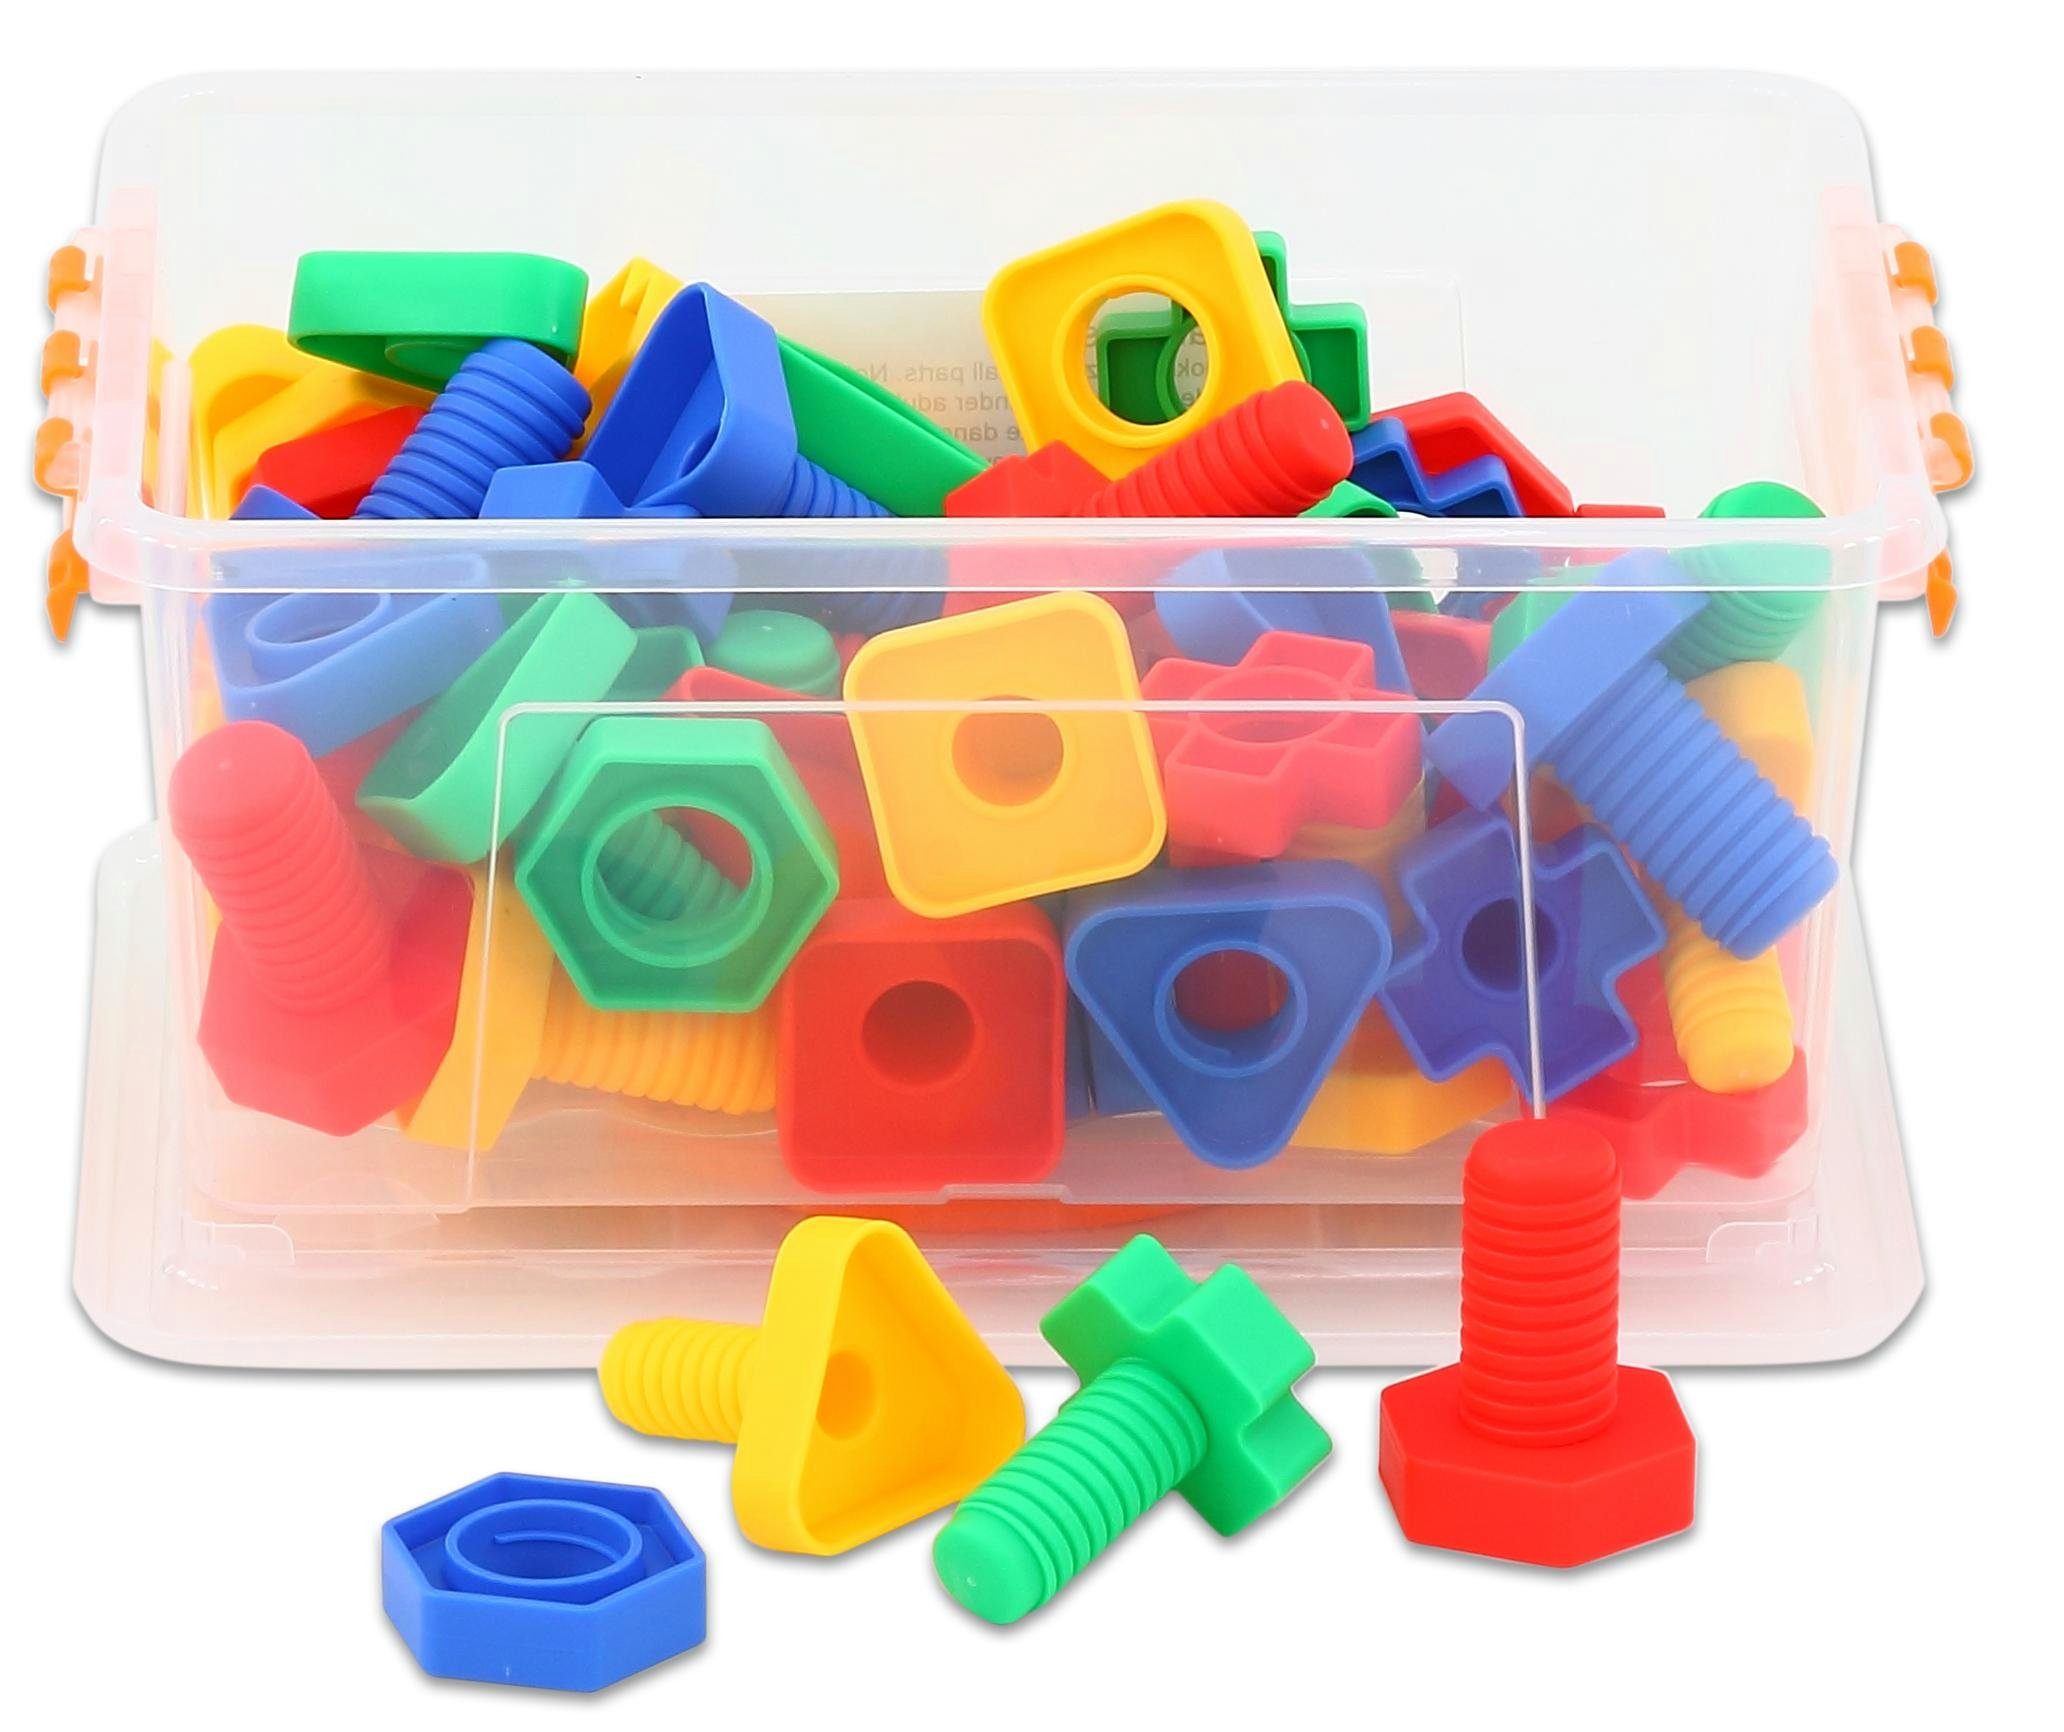 Steck-Spiel Steckspielzeug Buntes (64-tlg) Schrauben-Spiel Kinder-Spielzeug Betzold Werkzeug,